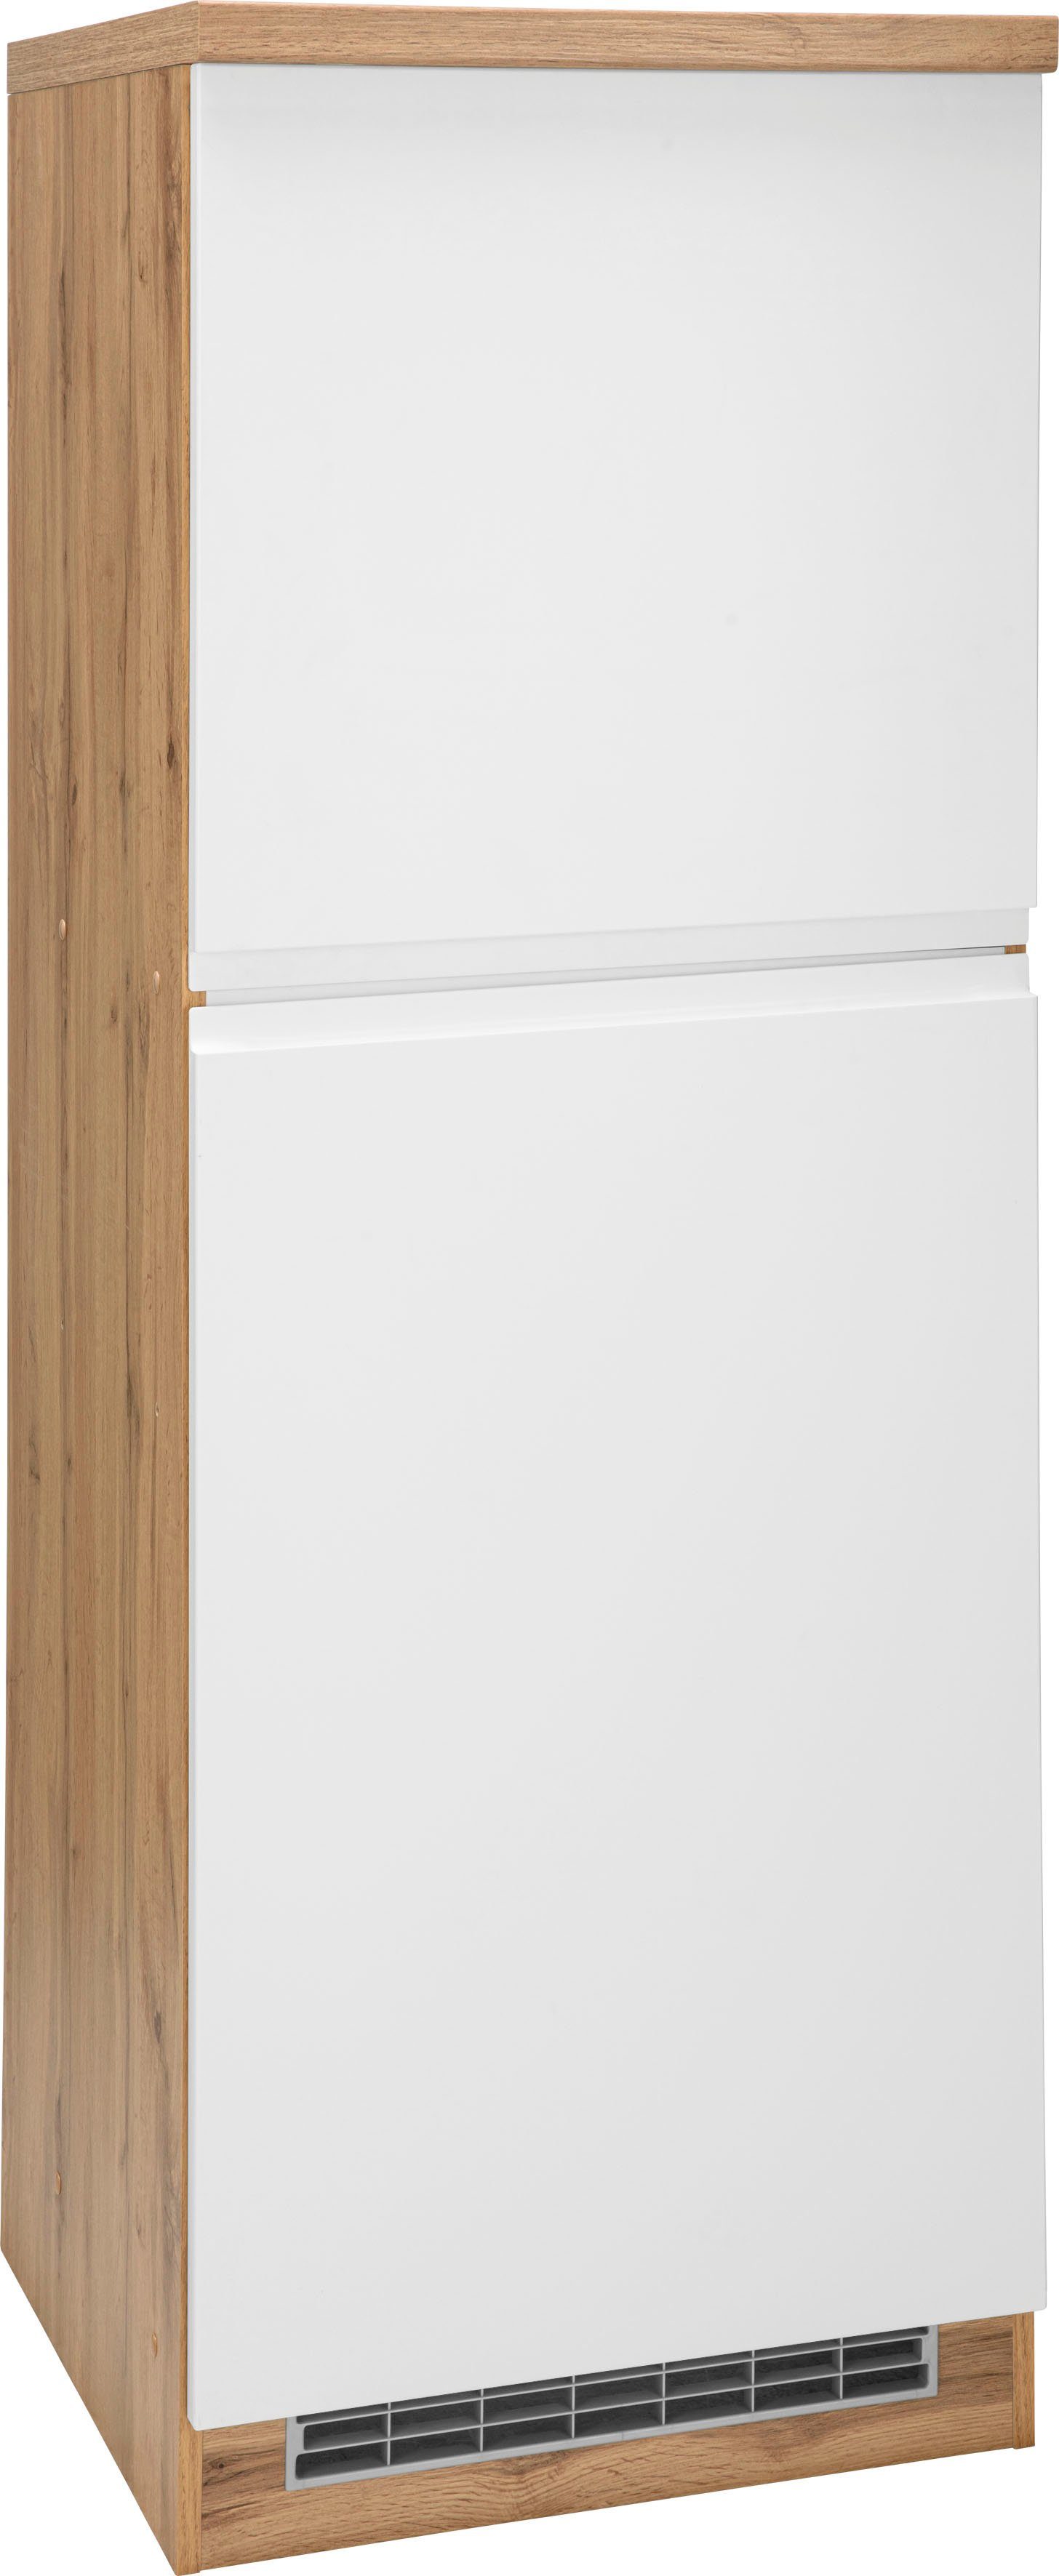 HELD MÖBEL Umbauschrank Bruneck Kühlschrankumbau >>Bruneck<< 60 cm breit, hochwertige MDF-Fronten wotaneiche/weiß Matt | wotaneiche | Umbauschränke